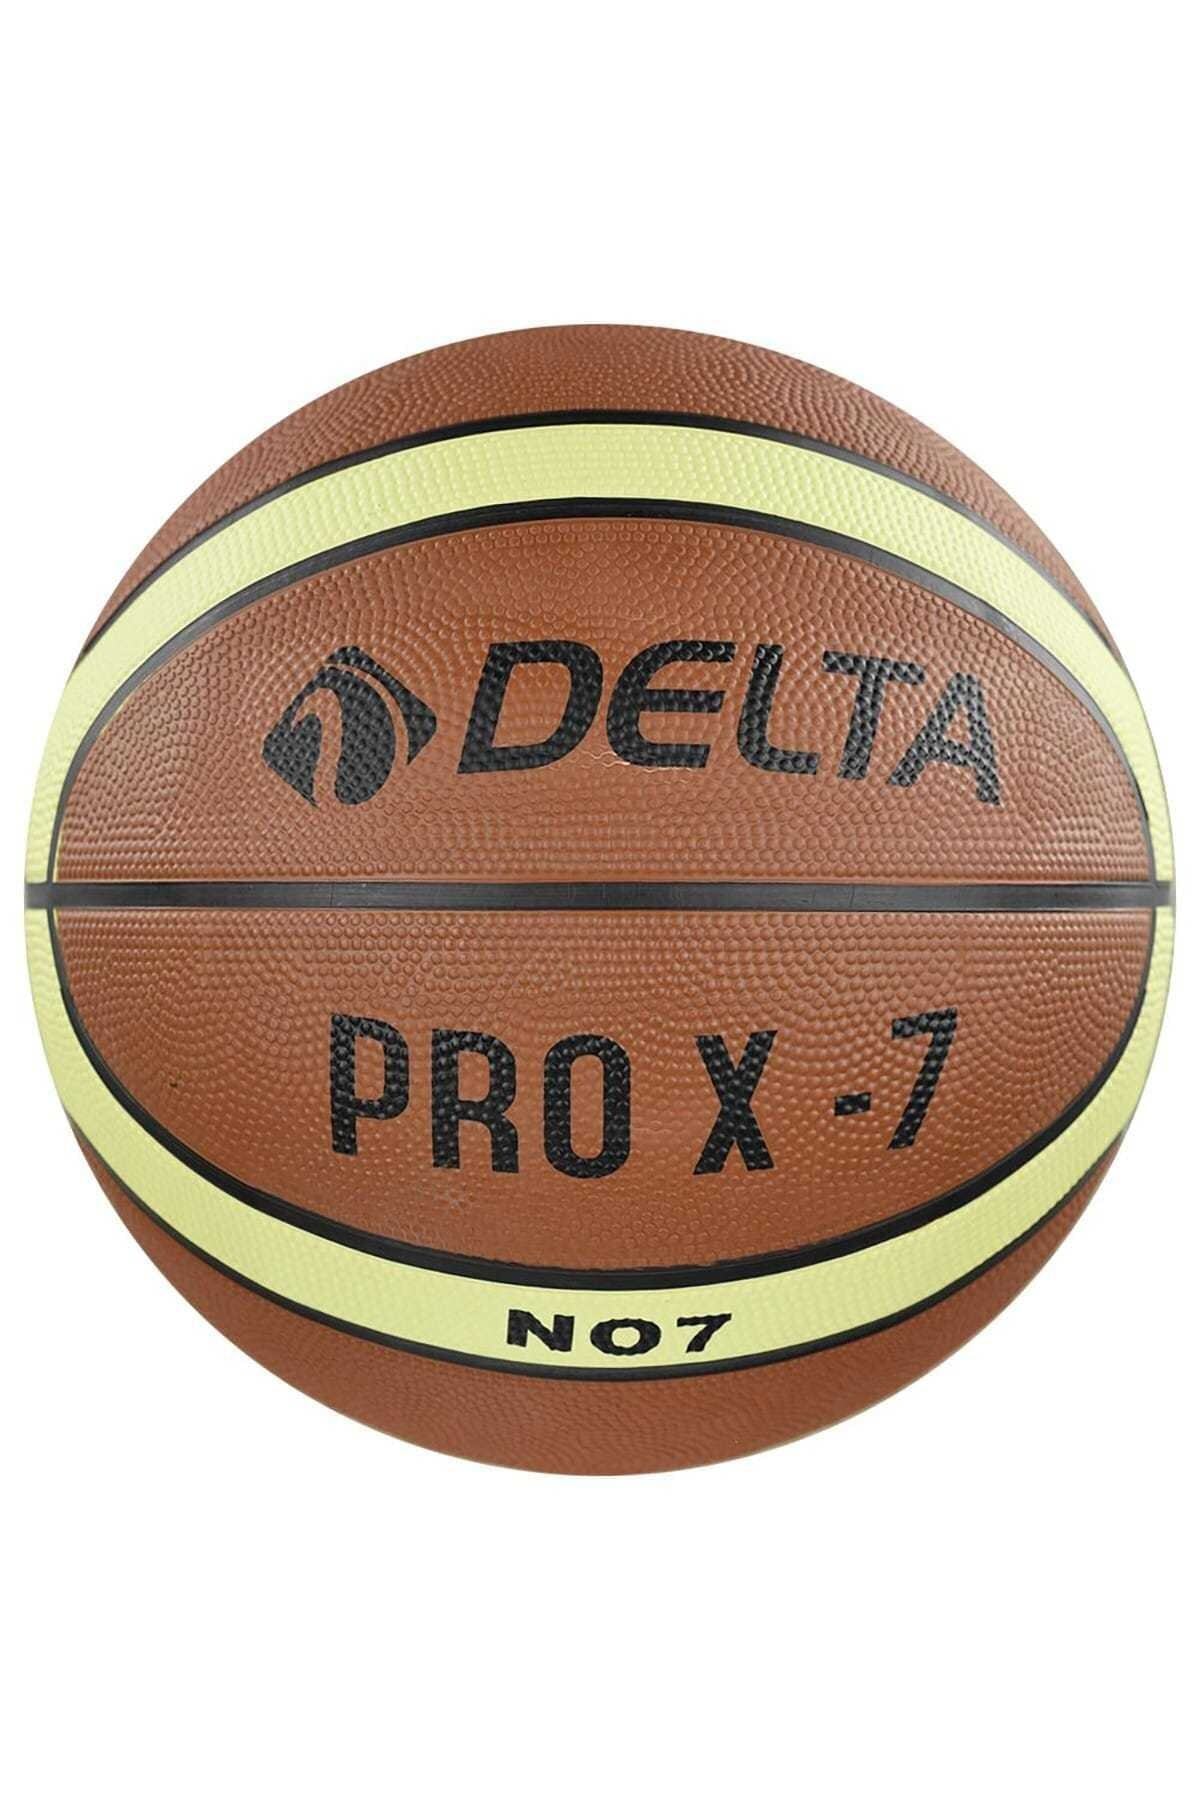  Pro X Deluxe Kauçuk 7 Numara Basketbol Topu Pro X-7 